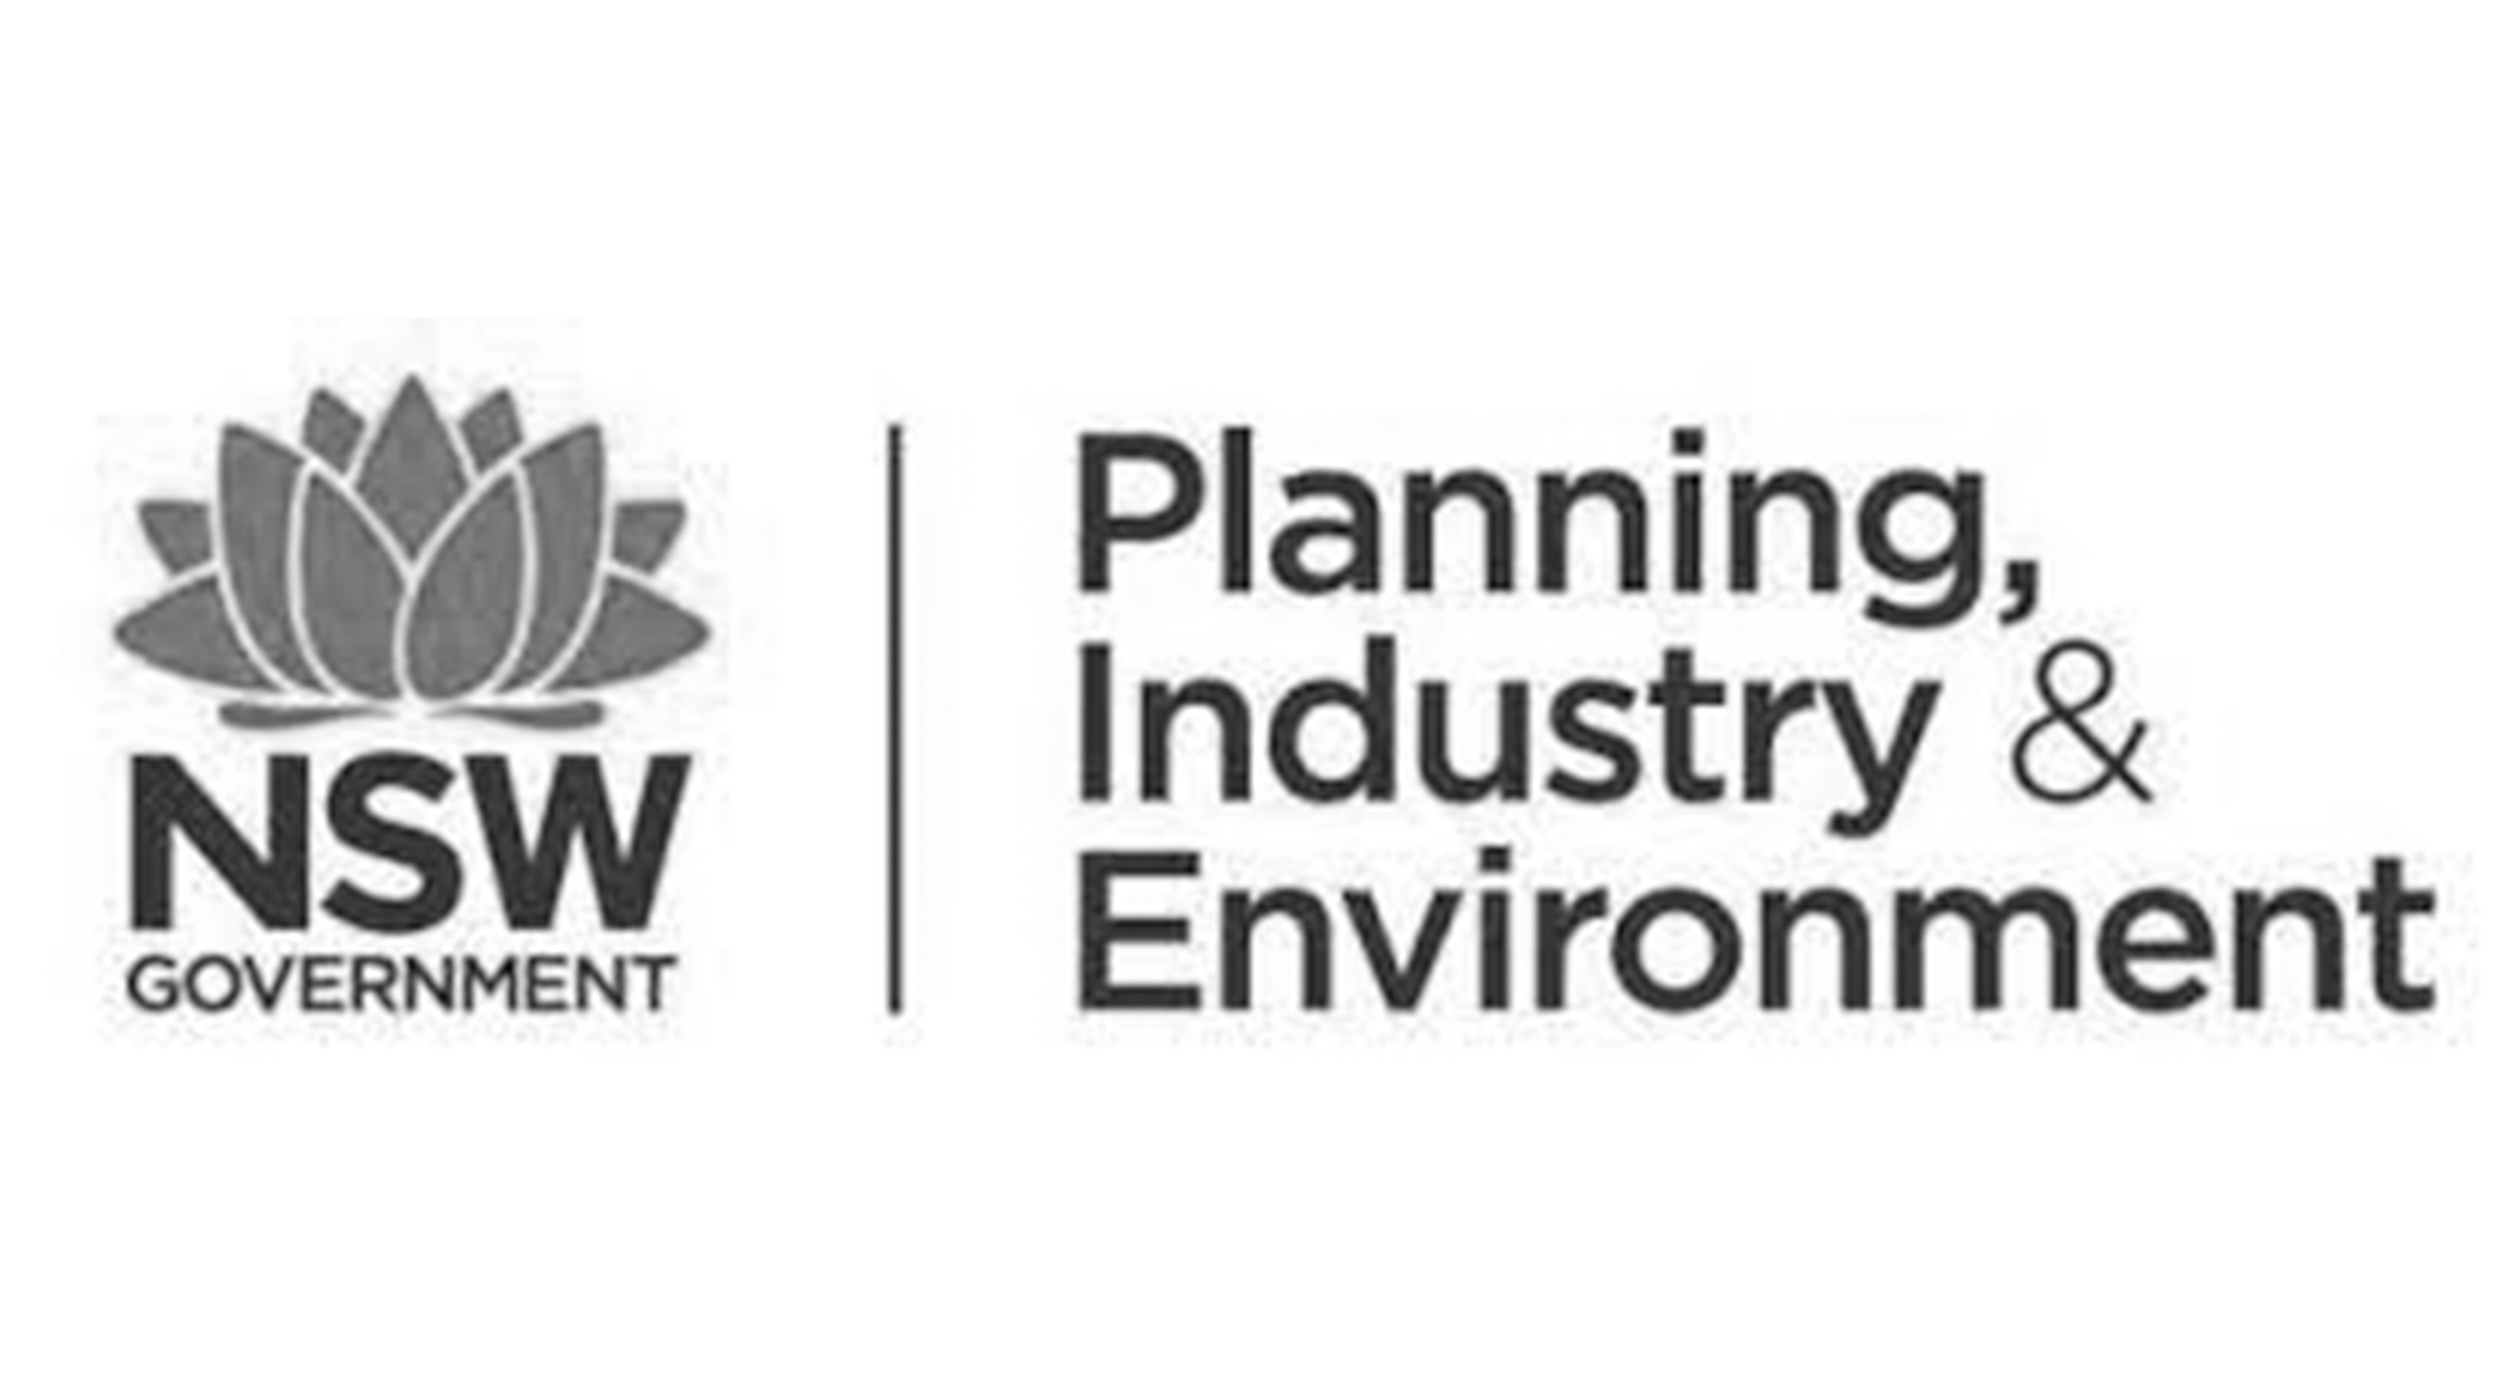 nsw placemaking logo.png